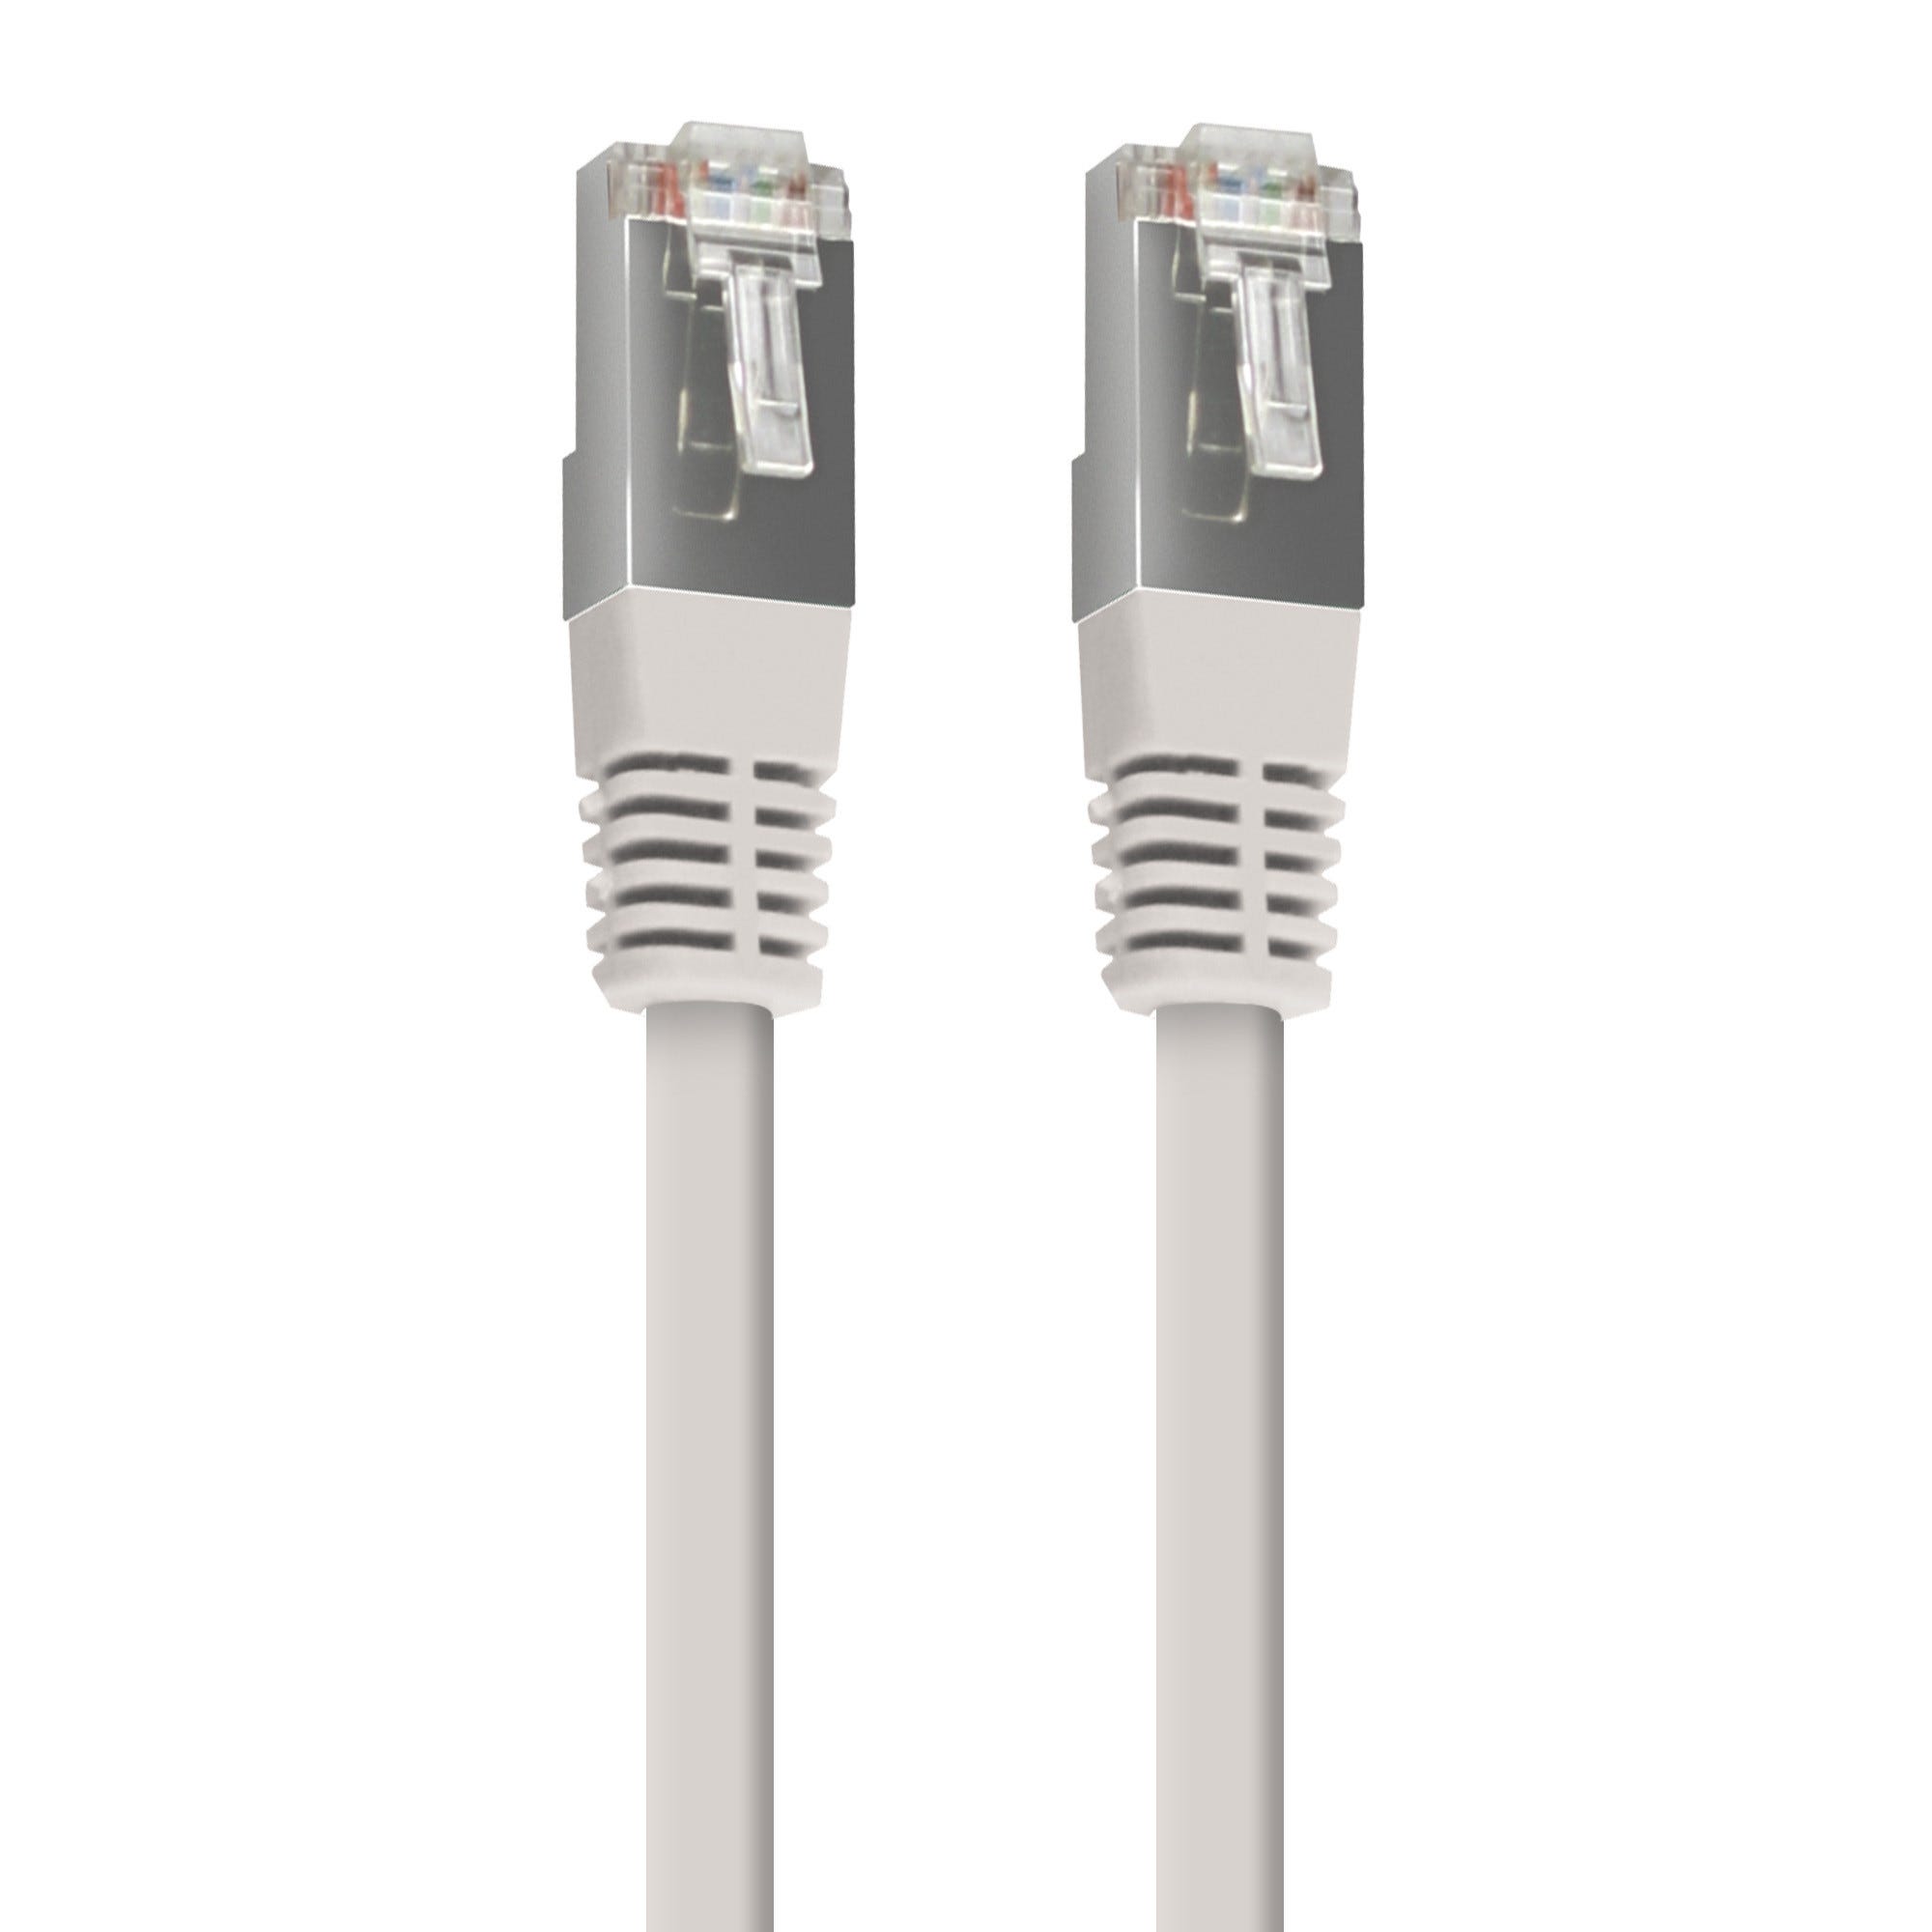 Câble Ethernet Cat 6 RJ45 blanc non blindé Blyss Blanc, 20m, Câbles et  fils électriques